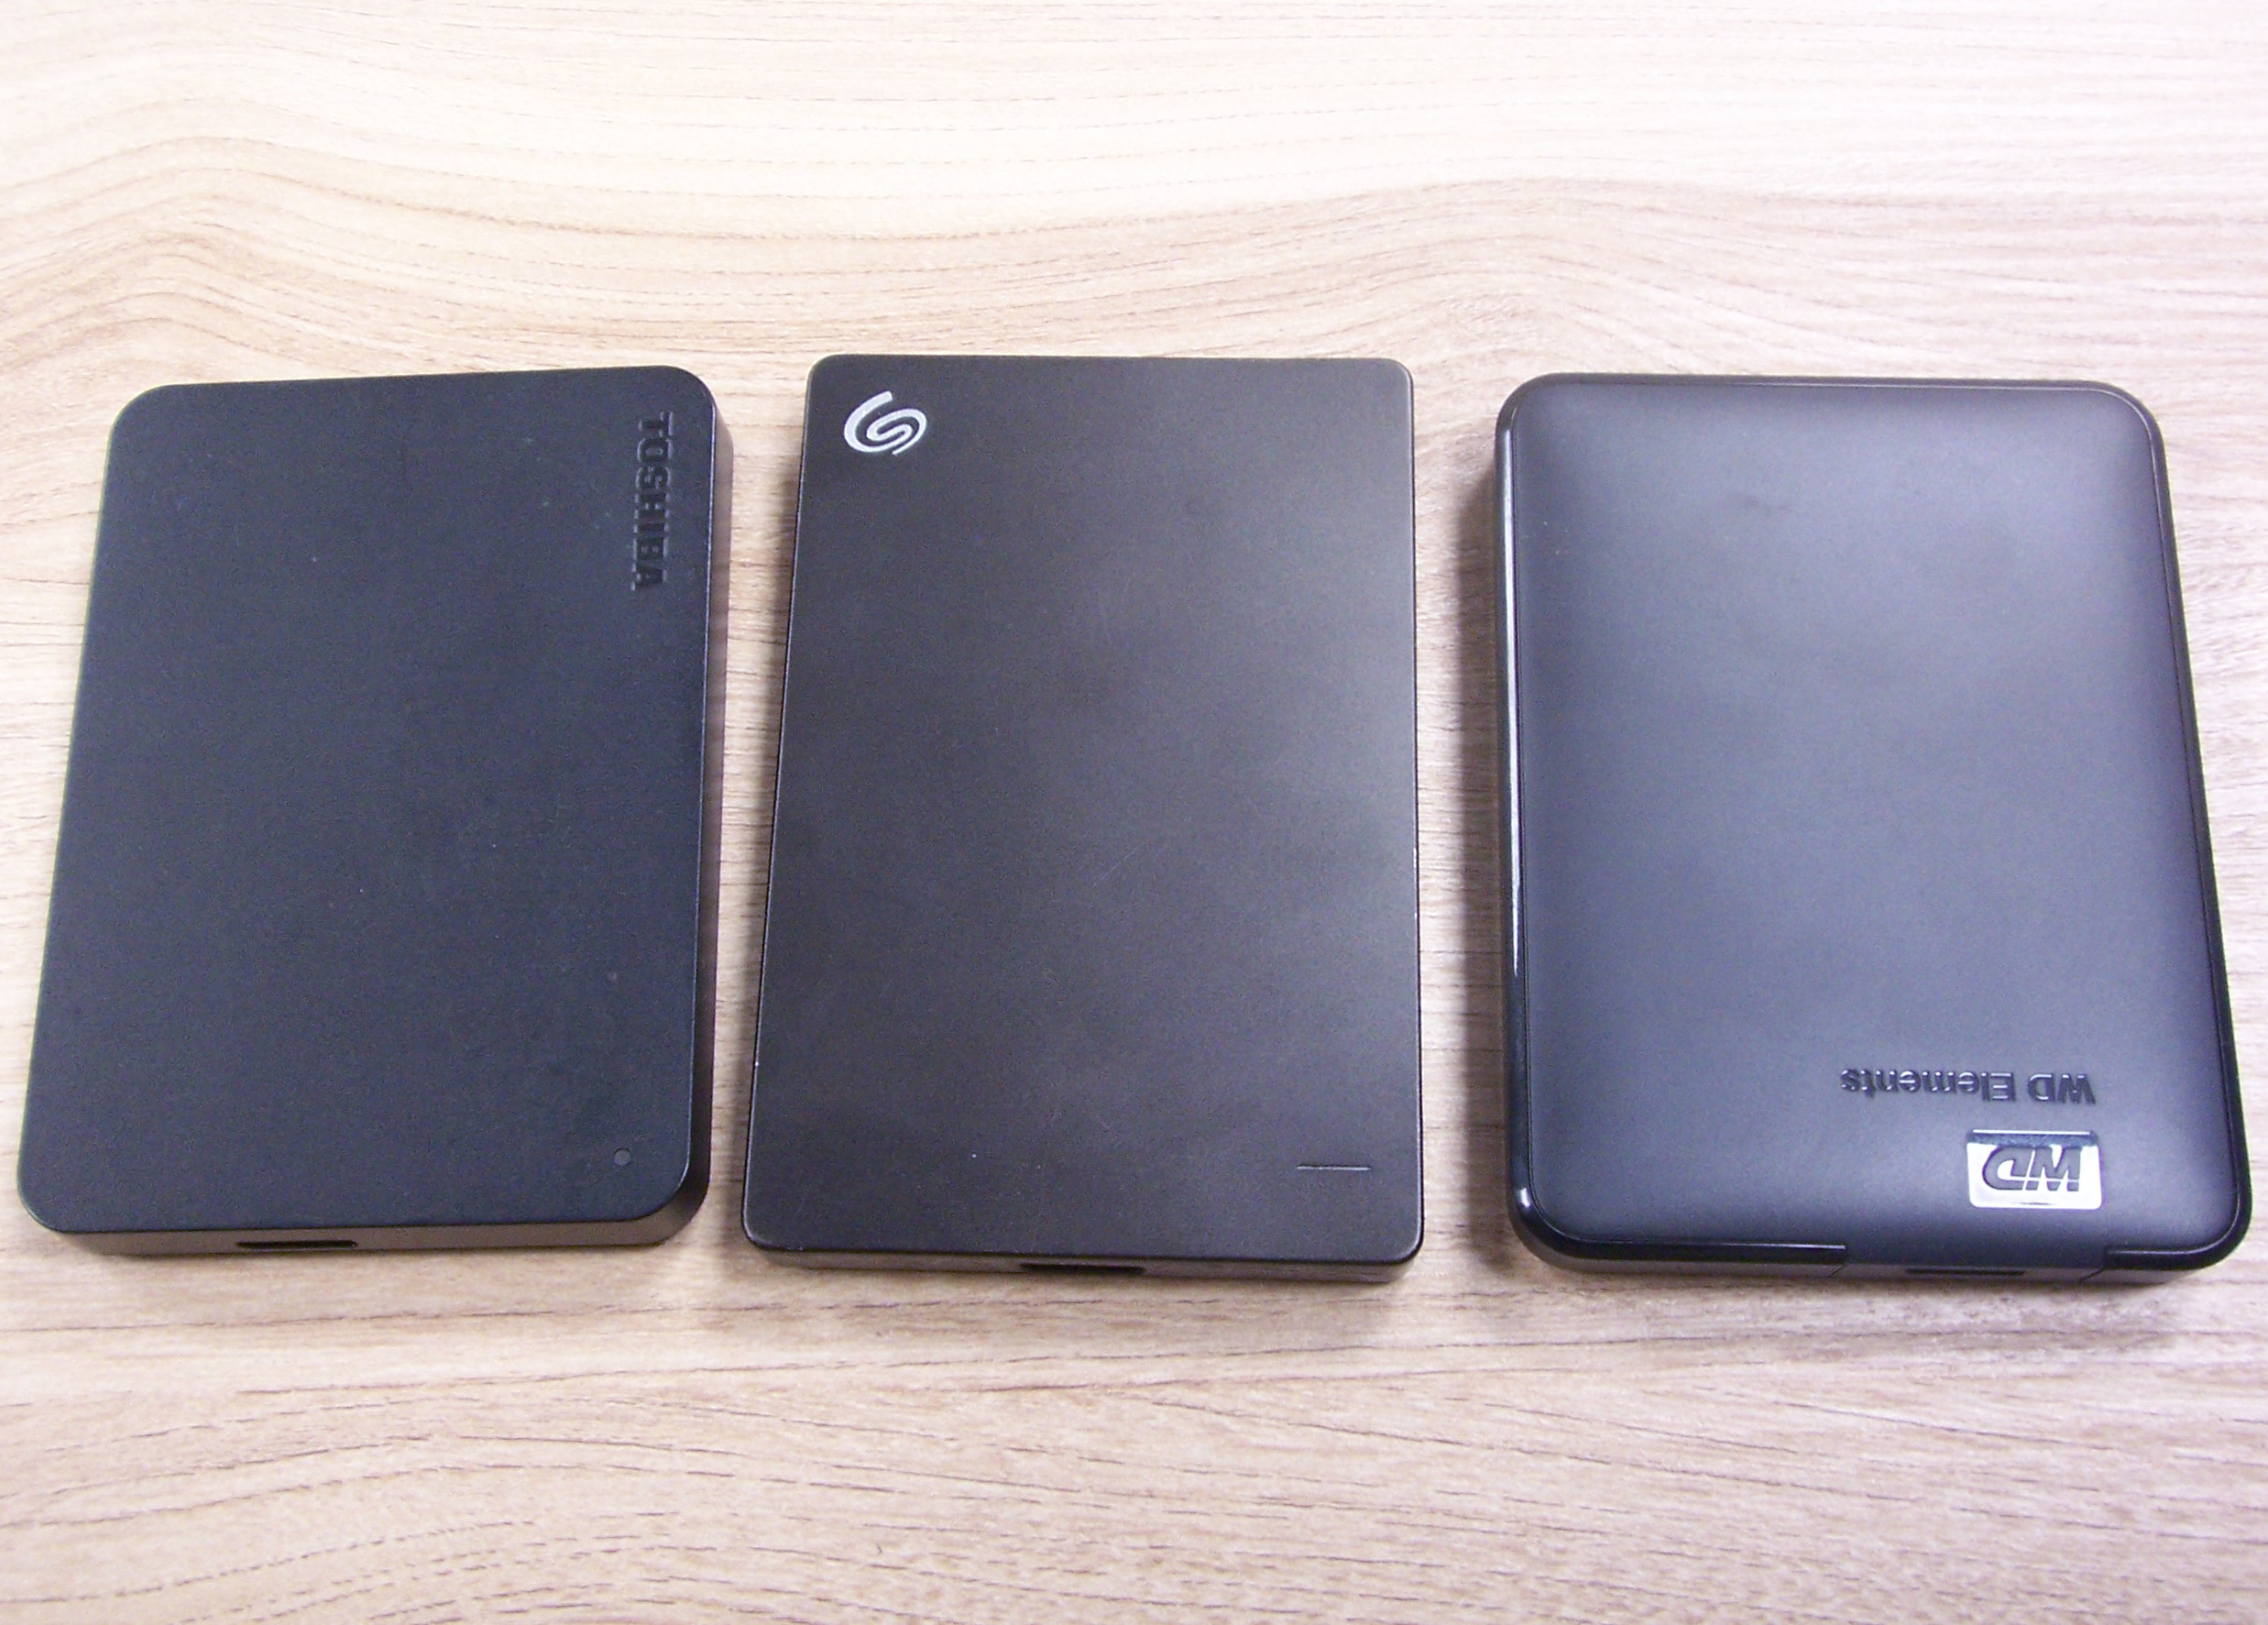 Trzy dyski twarde z interfejsem USB - Toshiba, Seagate, Western Digital, w czarnych obudowach.